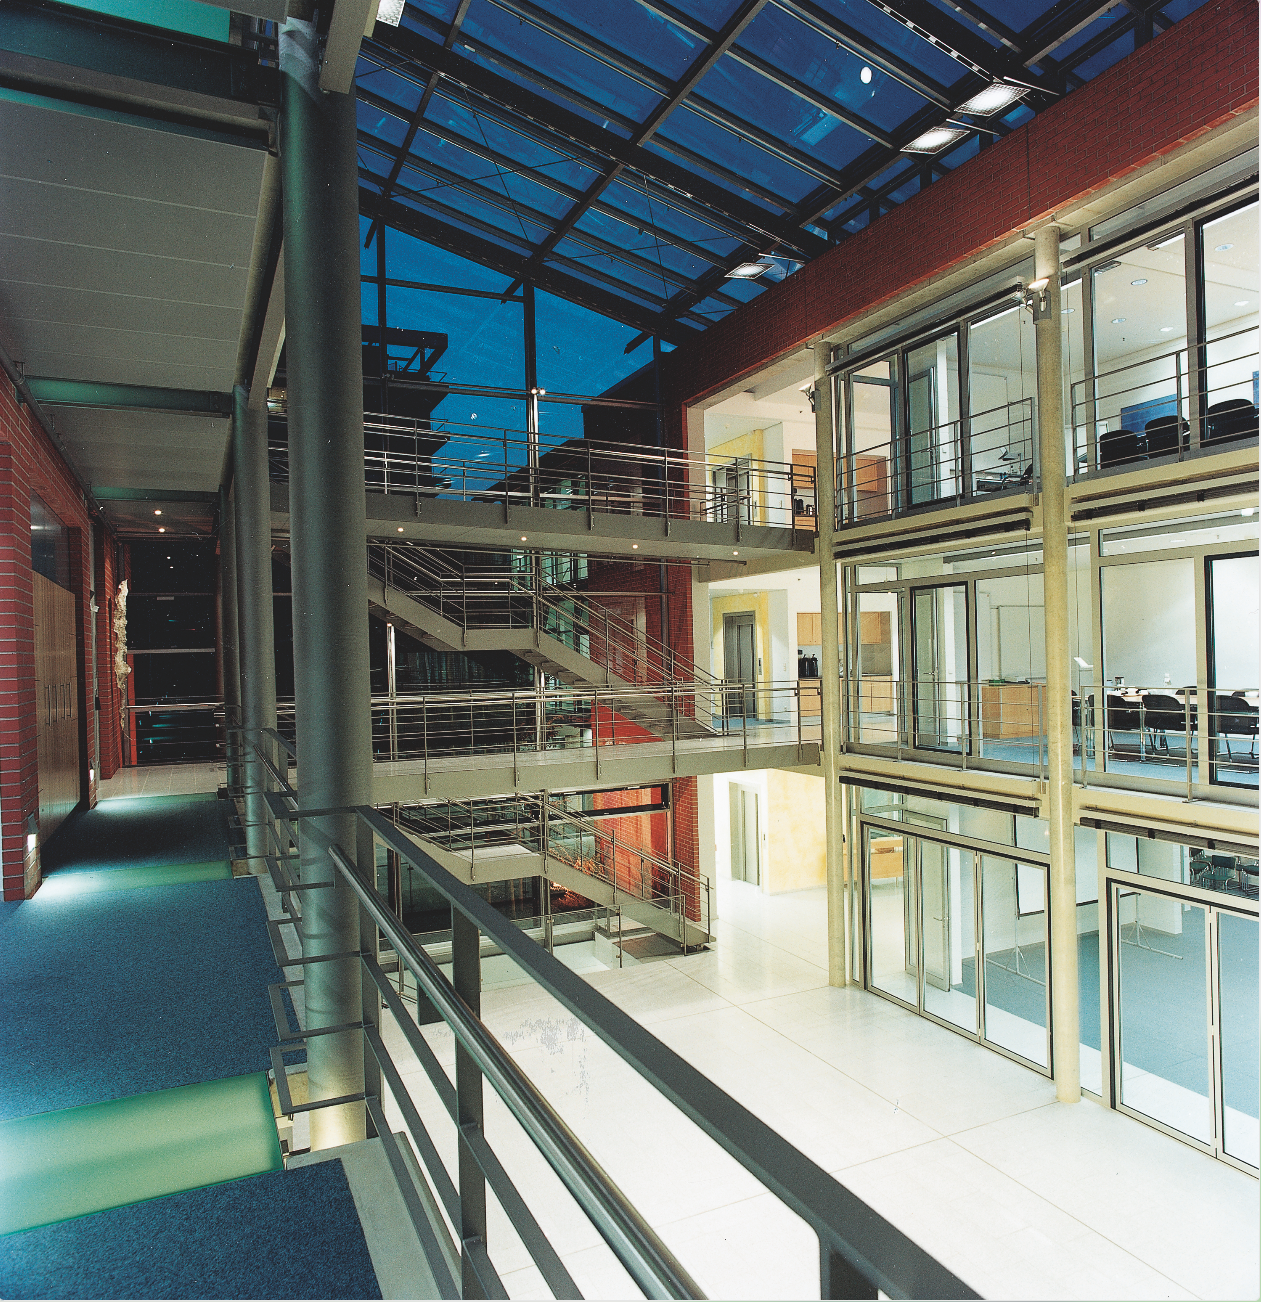 Vedere din interiorul centrului de biotehnologie, inaugurat în 1999. Se observă laboratoarele de cercetare&dezvoltare